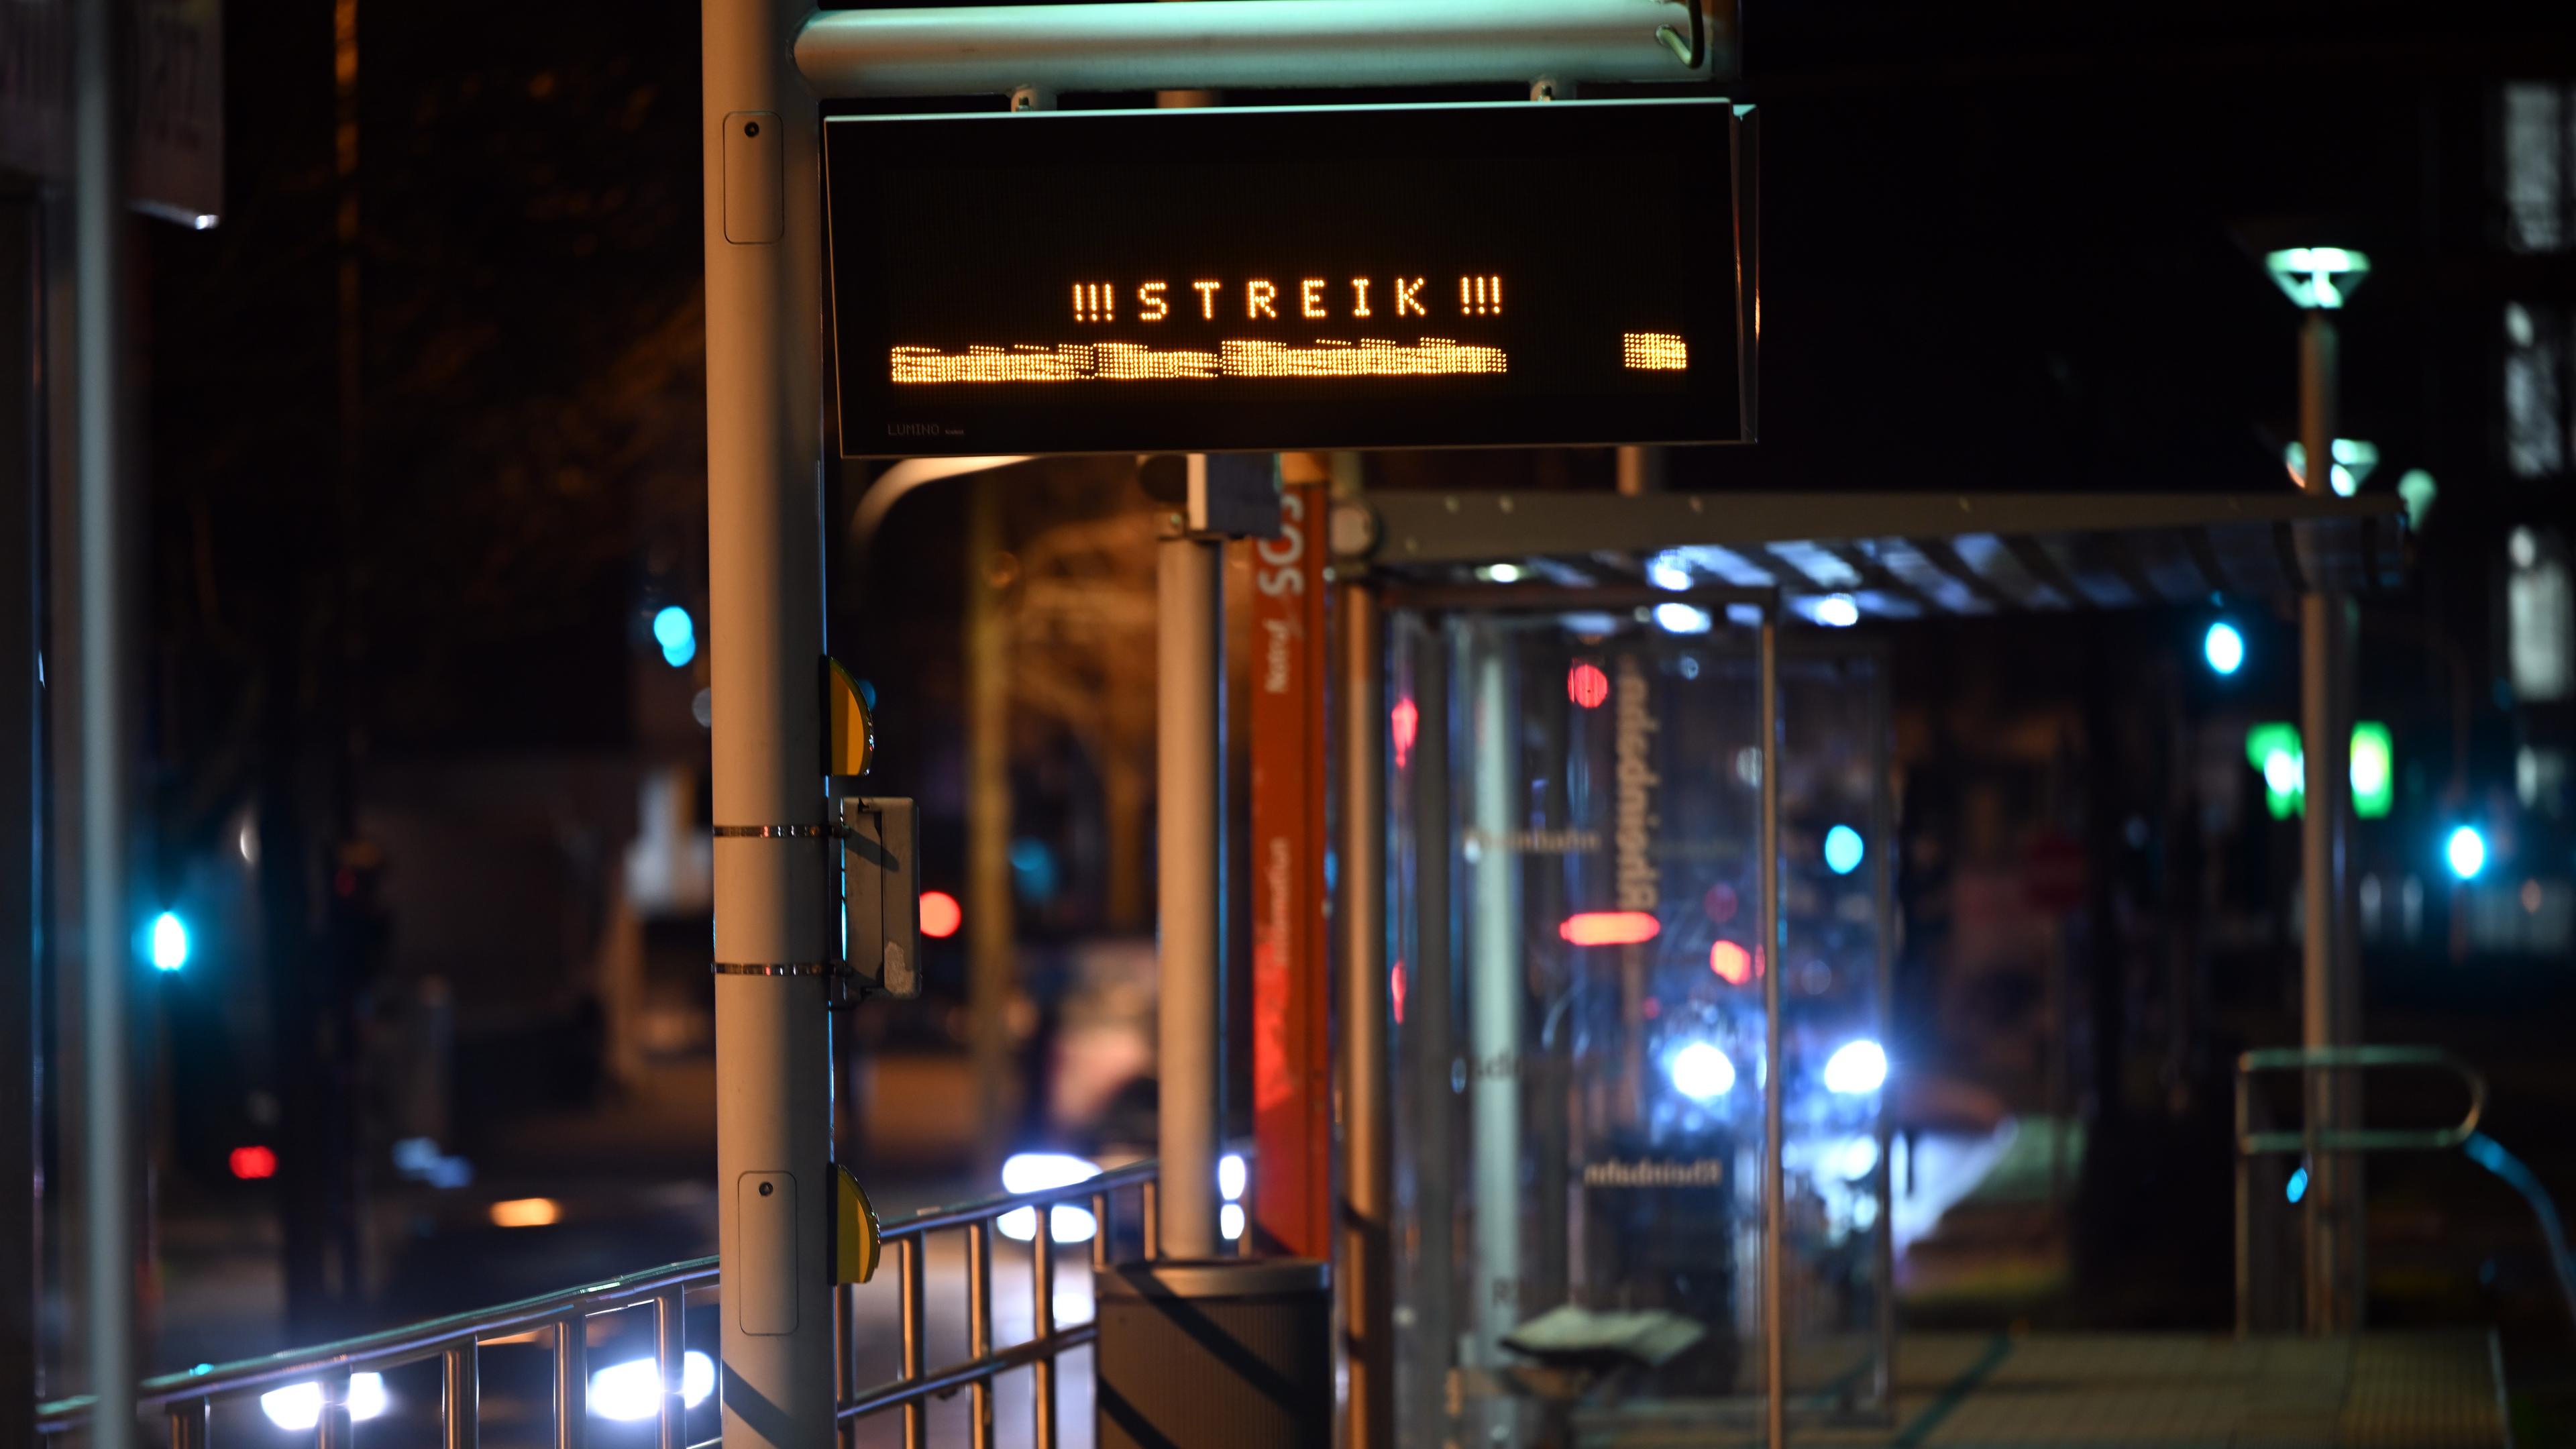 Die Anzeige einer Bahnhaltestelle in Düsseldorf zeugt das Wort "Streik"